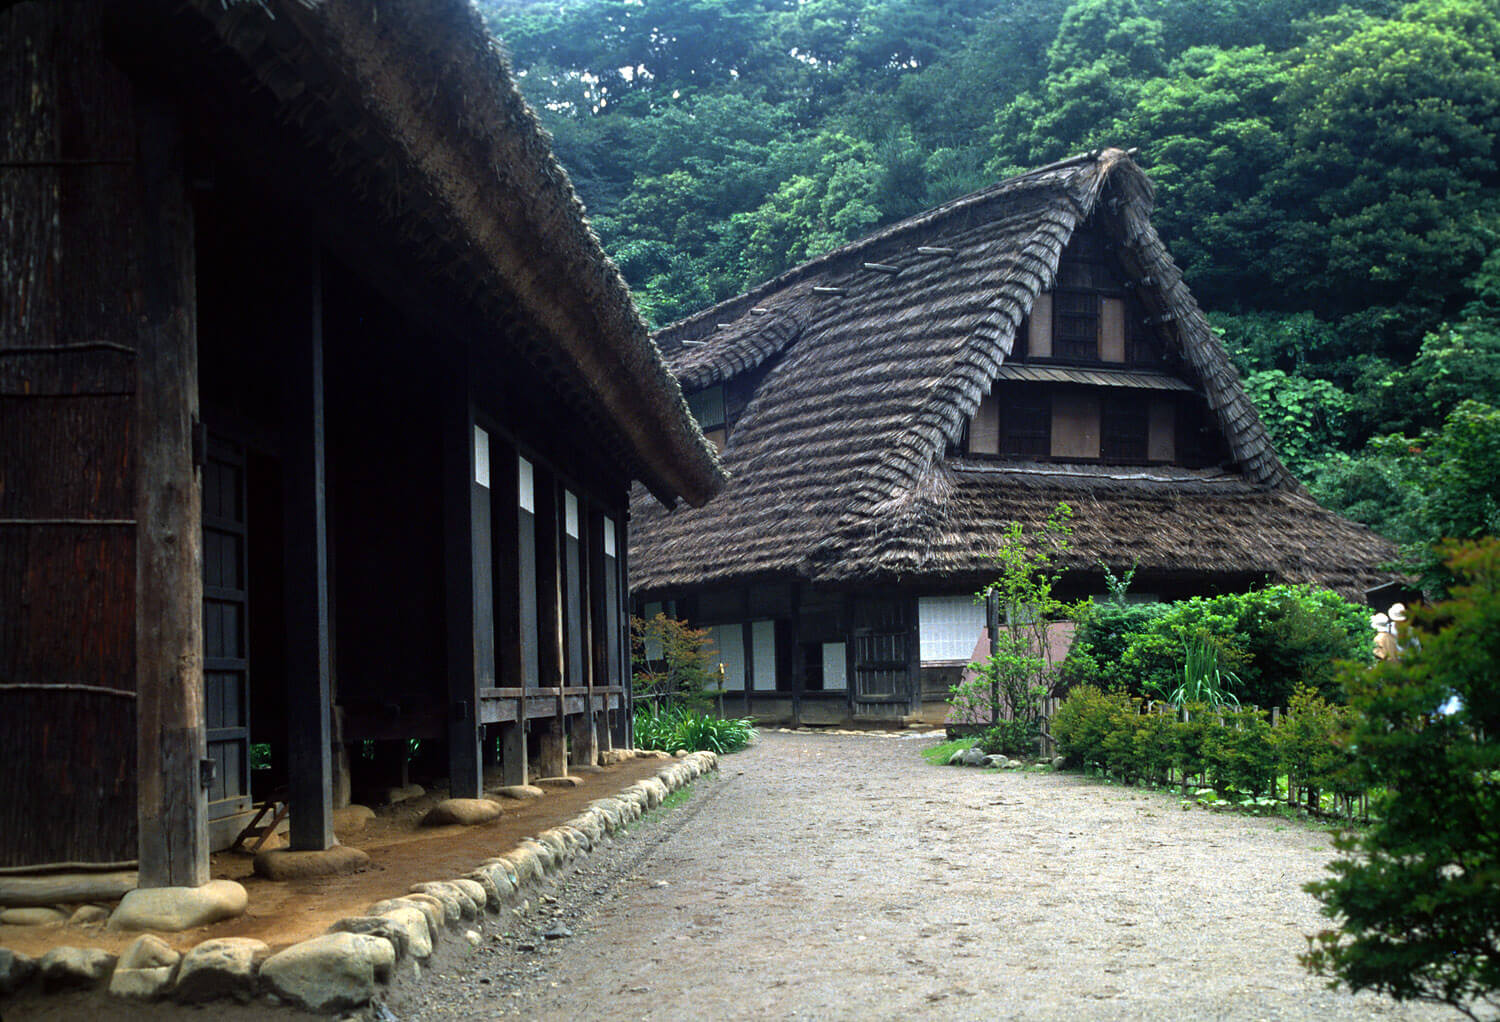  Rumah  Para Petani Jepang  Yang Disebut Minka Dan Beberapa 